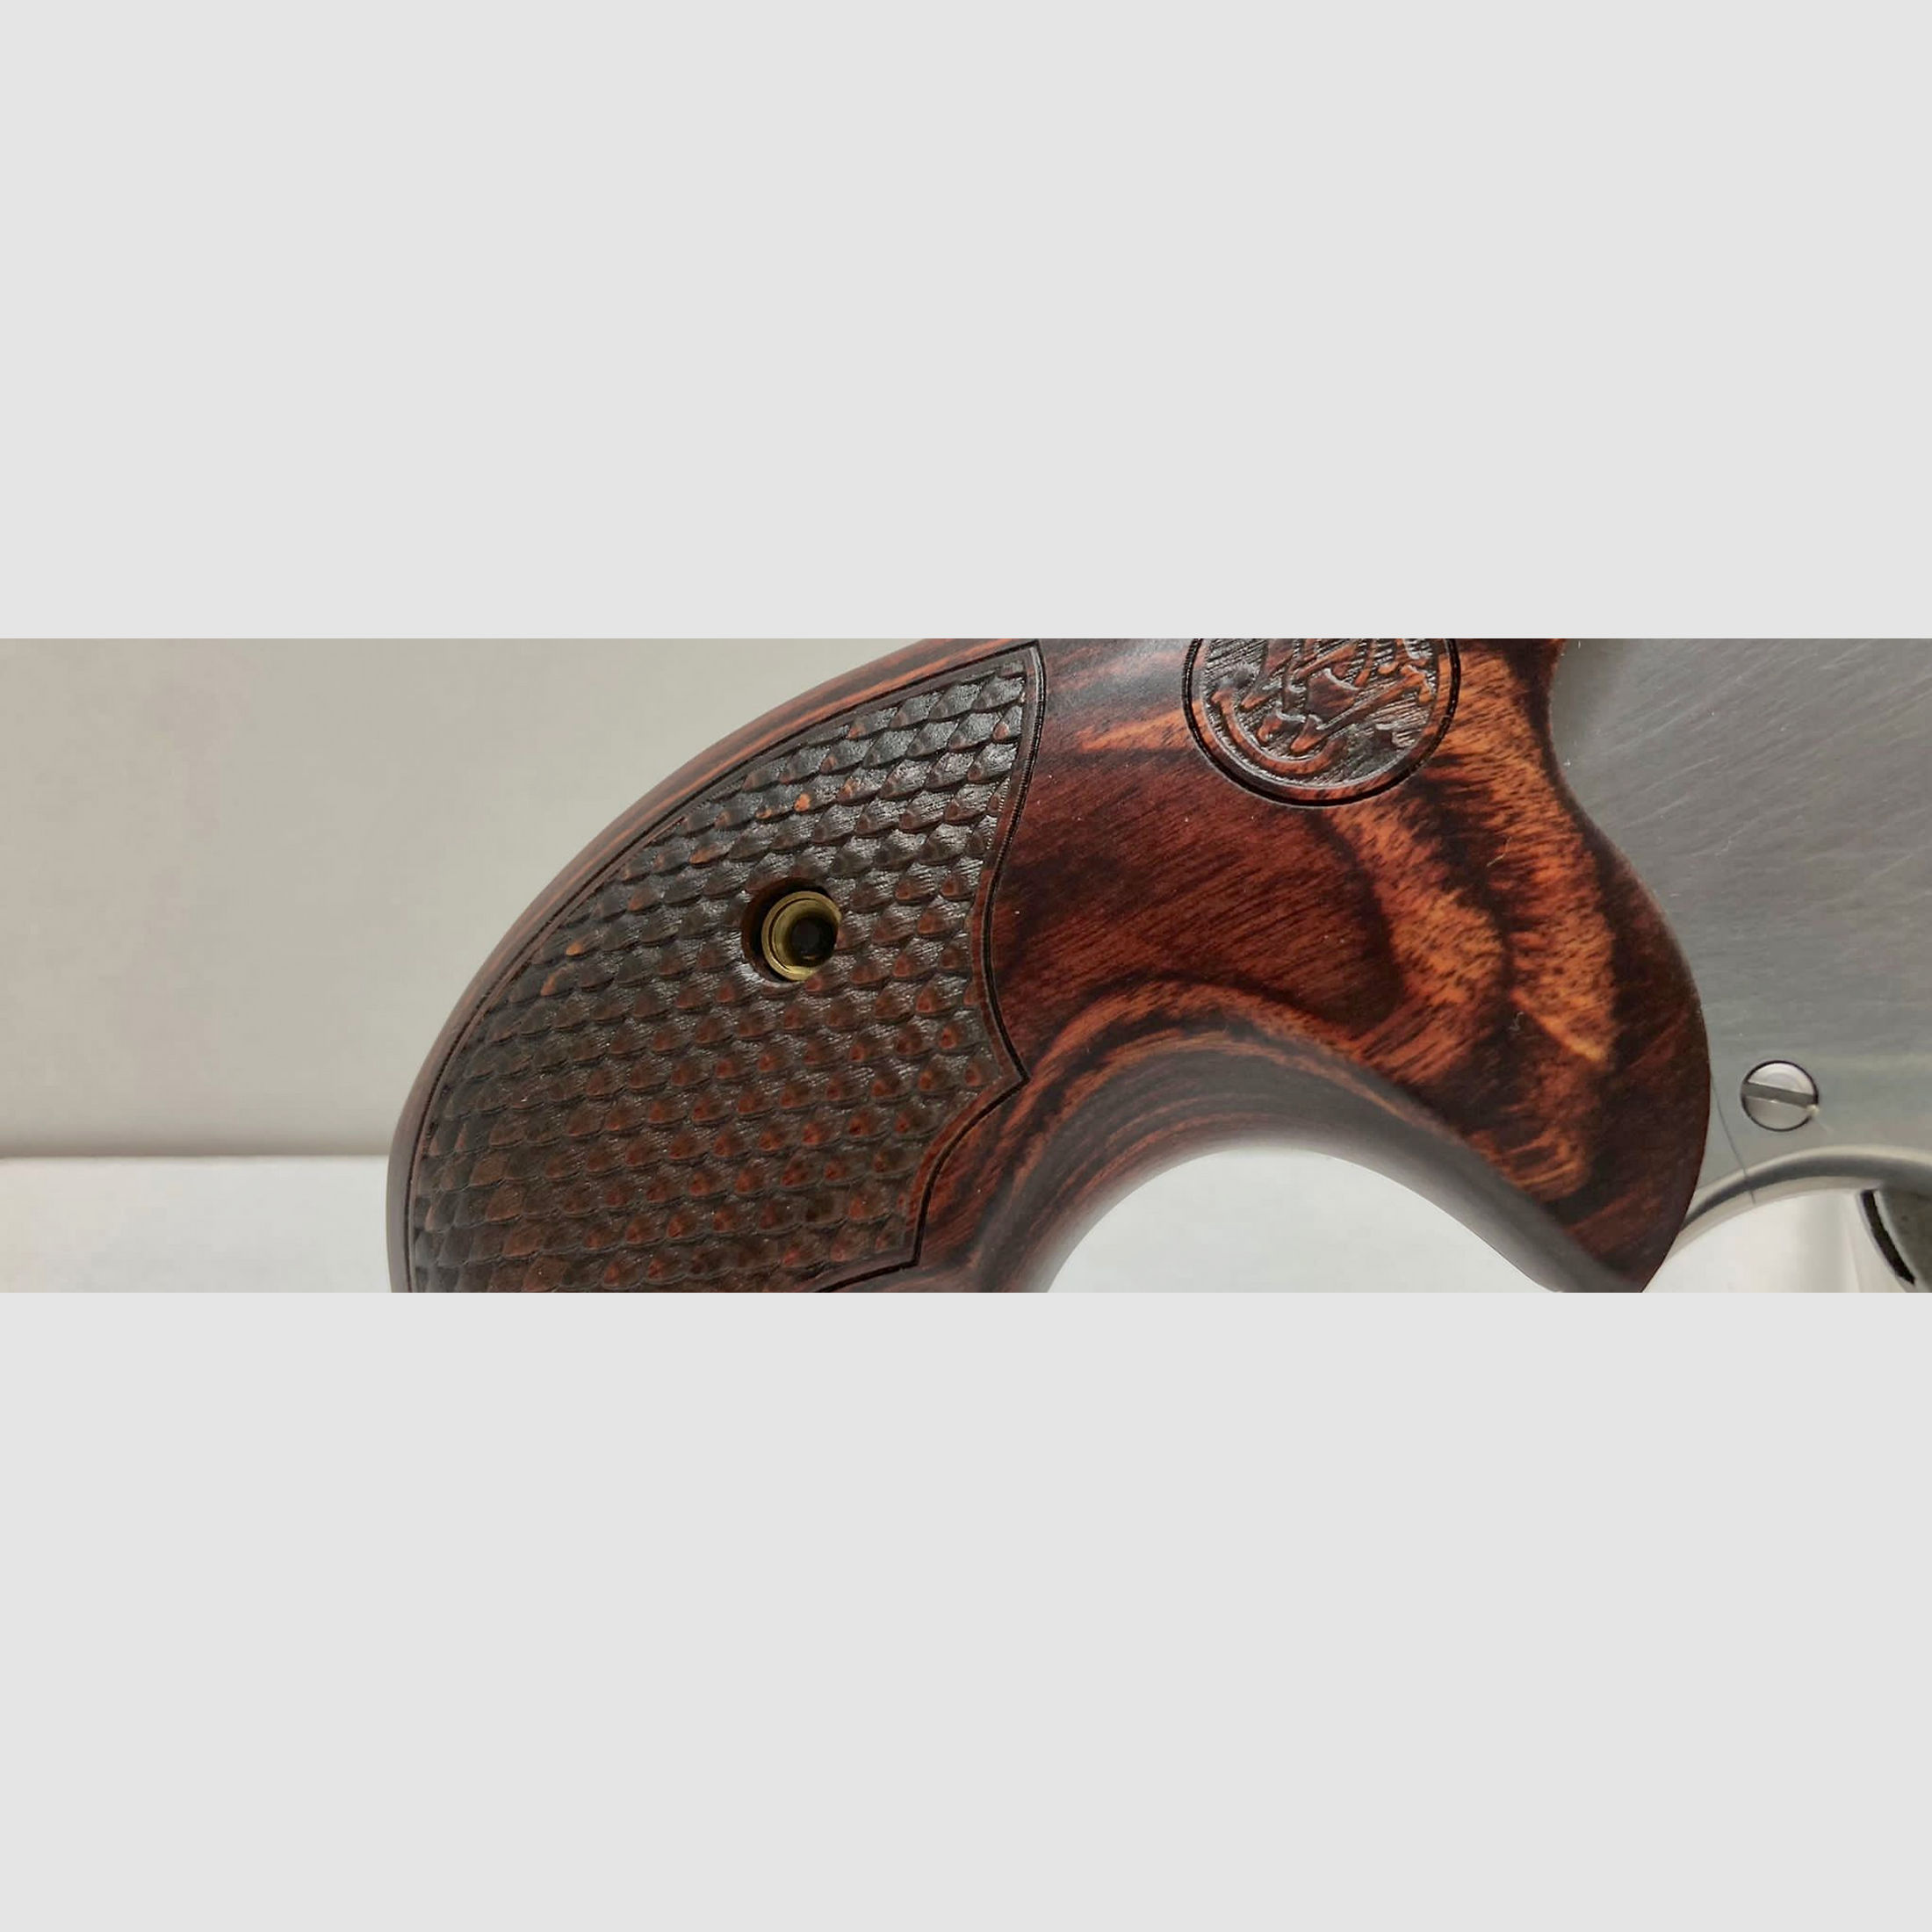 Smith & Wesson S & W Revolver Mod. 629 DELUXE 3" RR